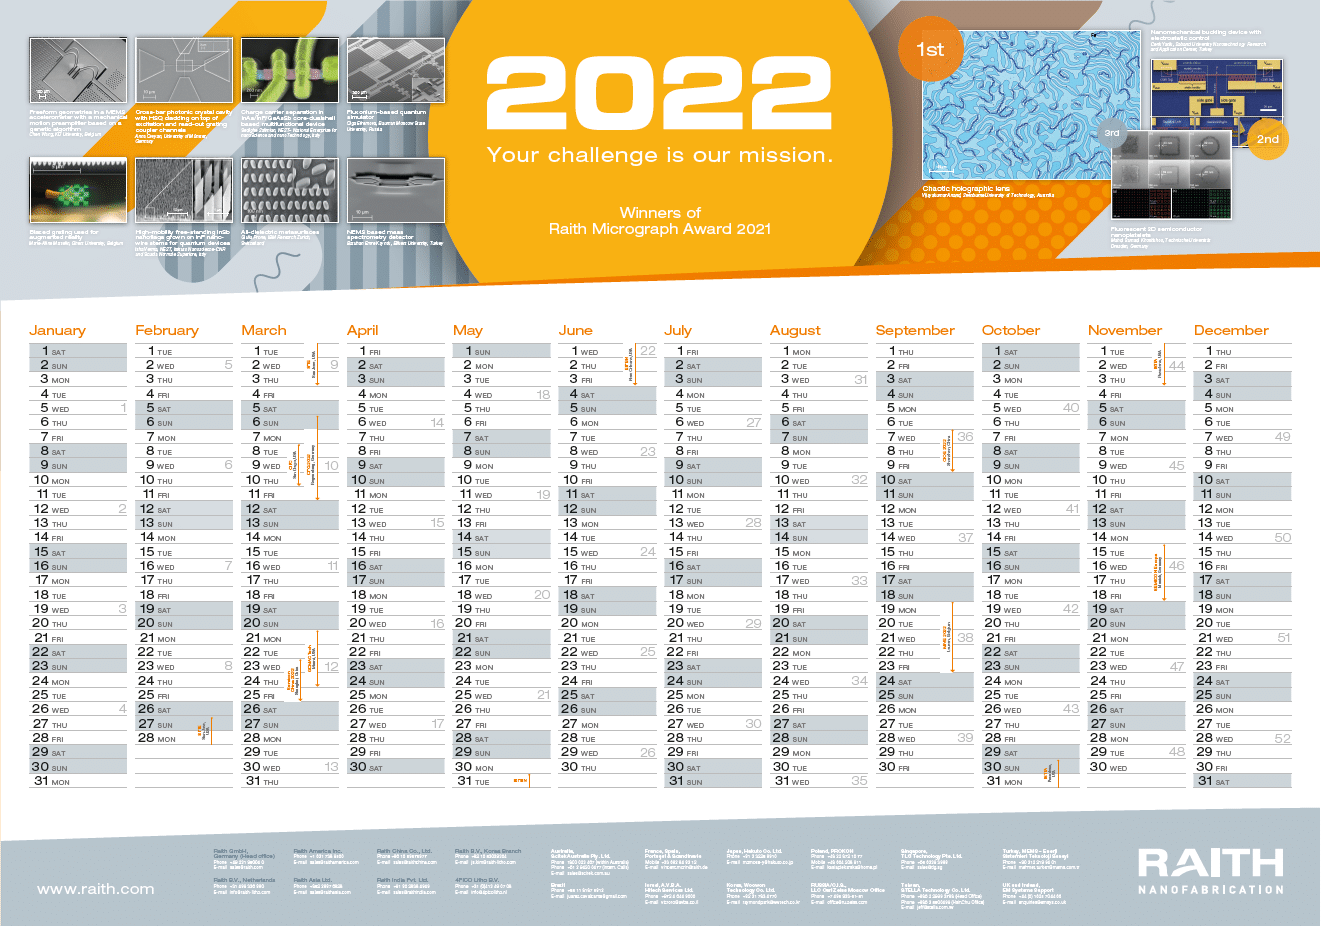 image of the raith calendar 2022